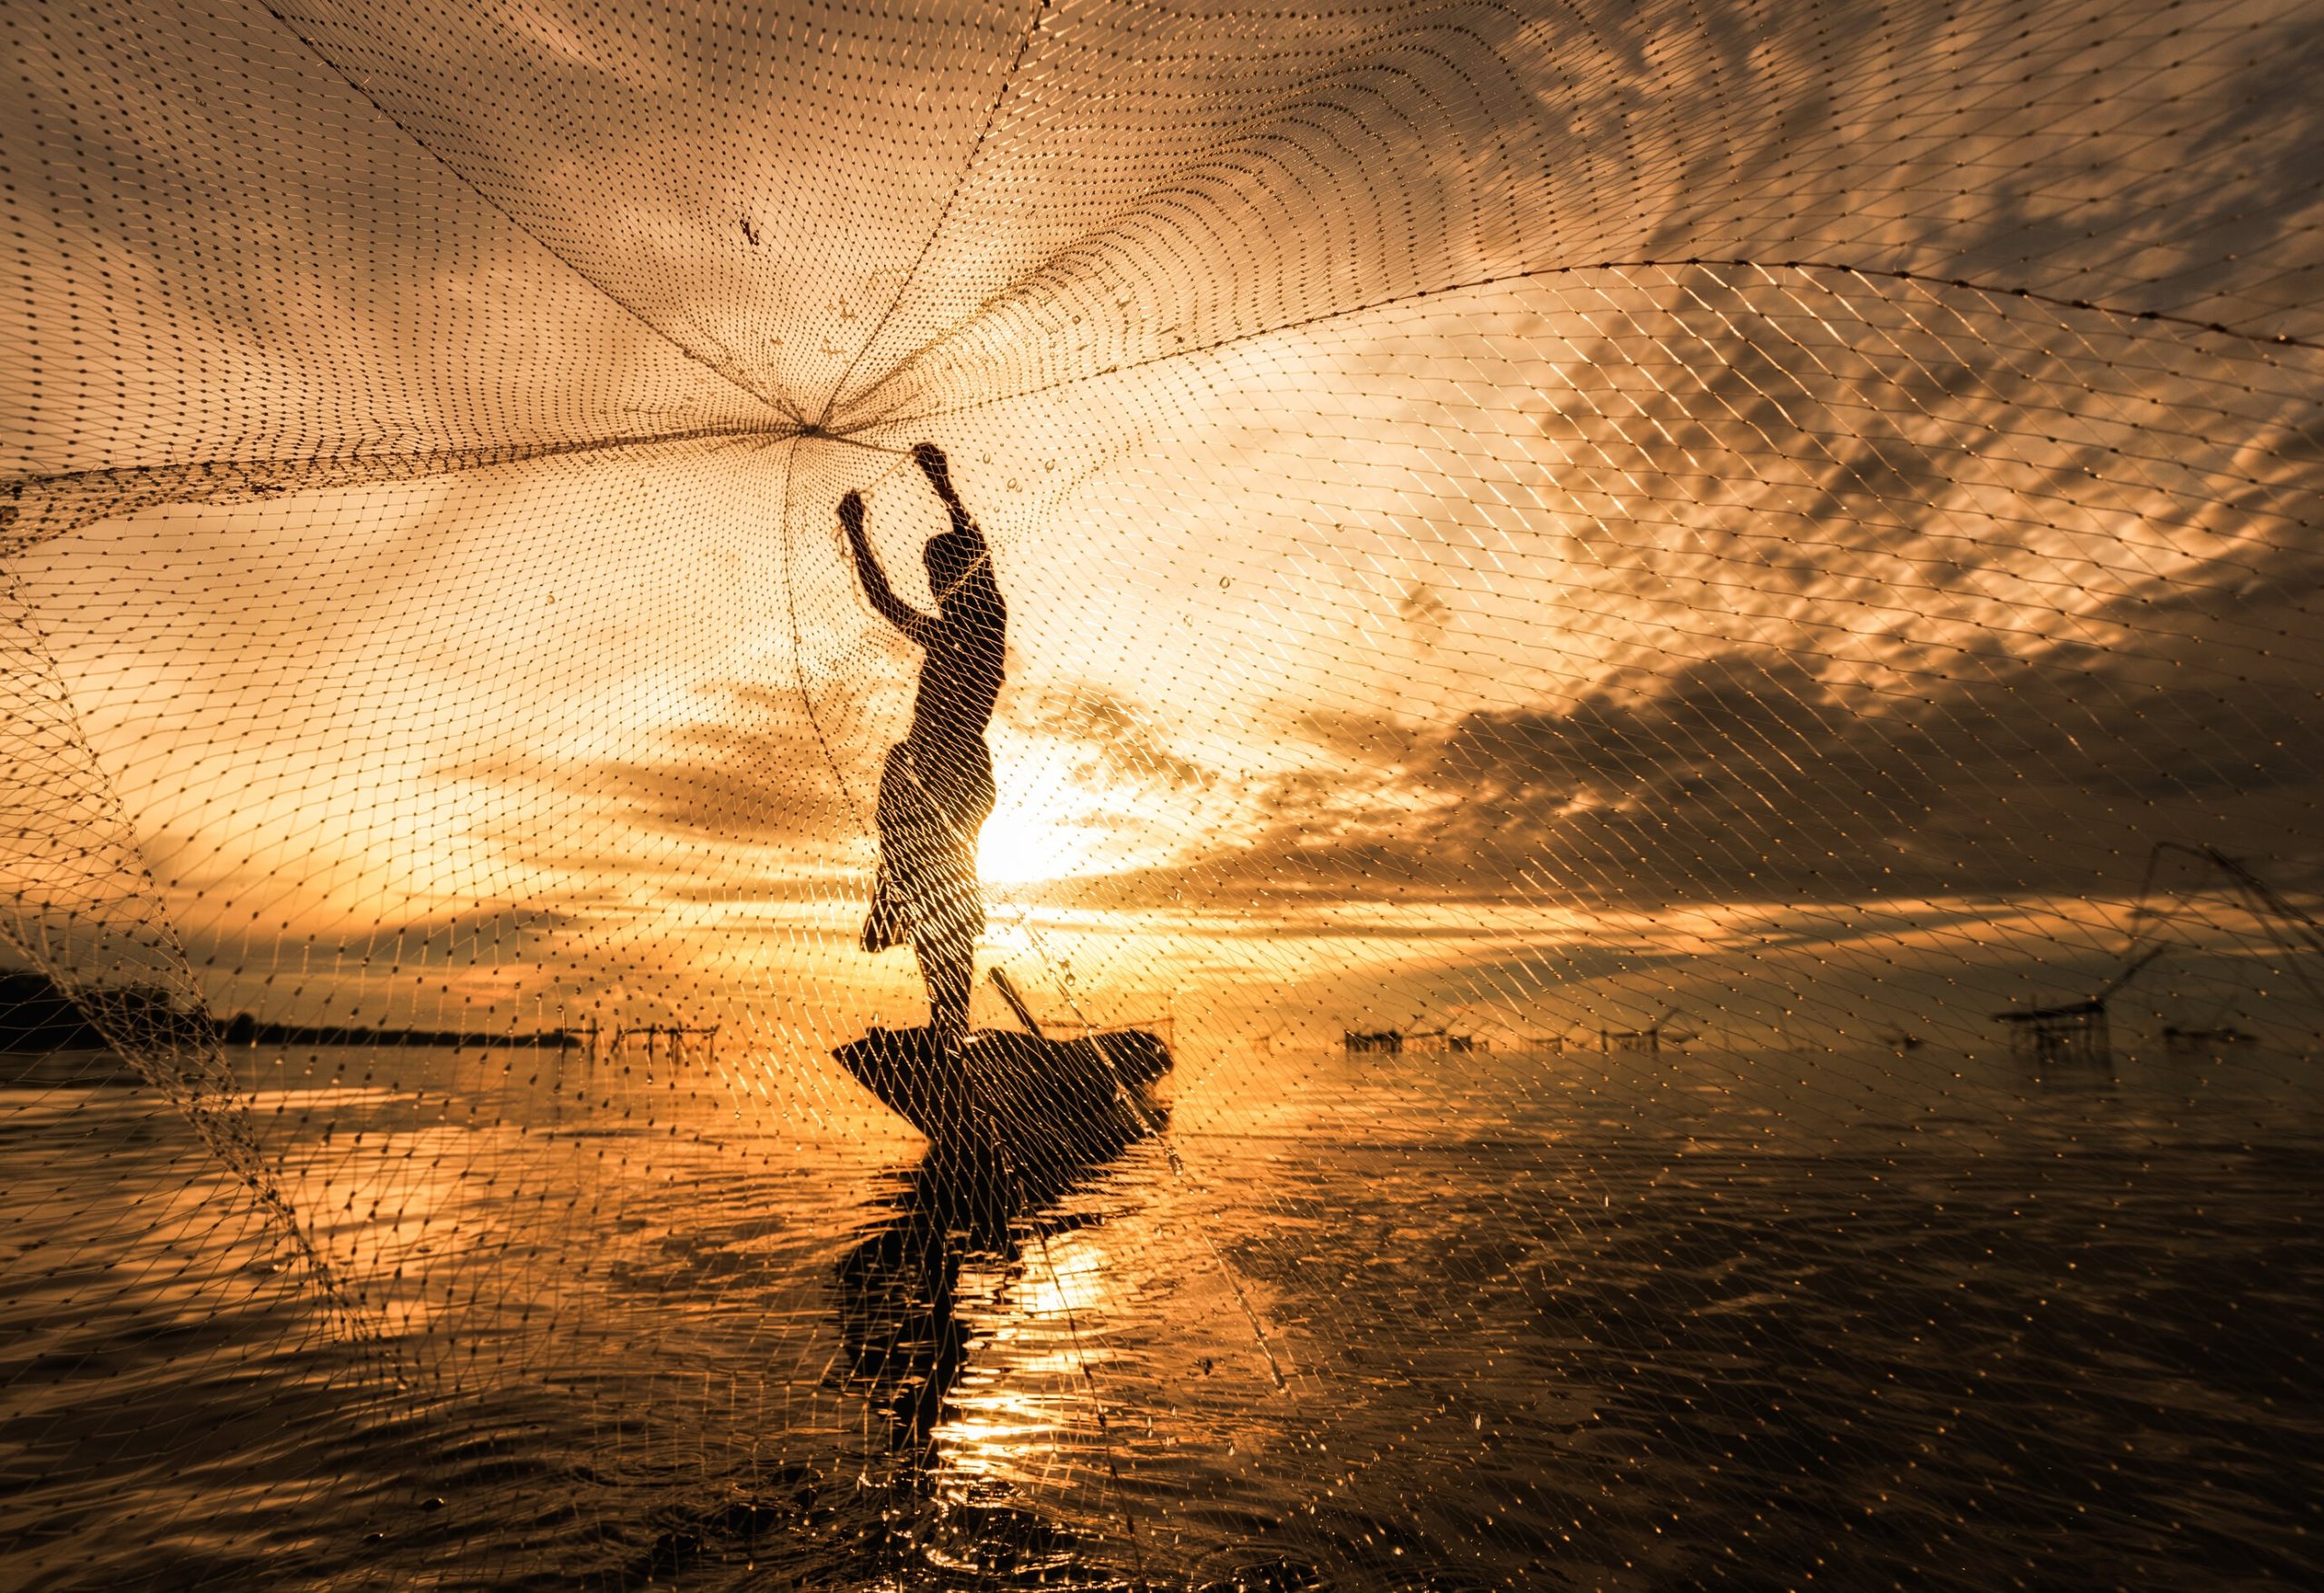 Incremento en pesca y acuicultura contribuye de manera decisiva a la seguridad alimentaria mundial